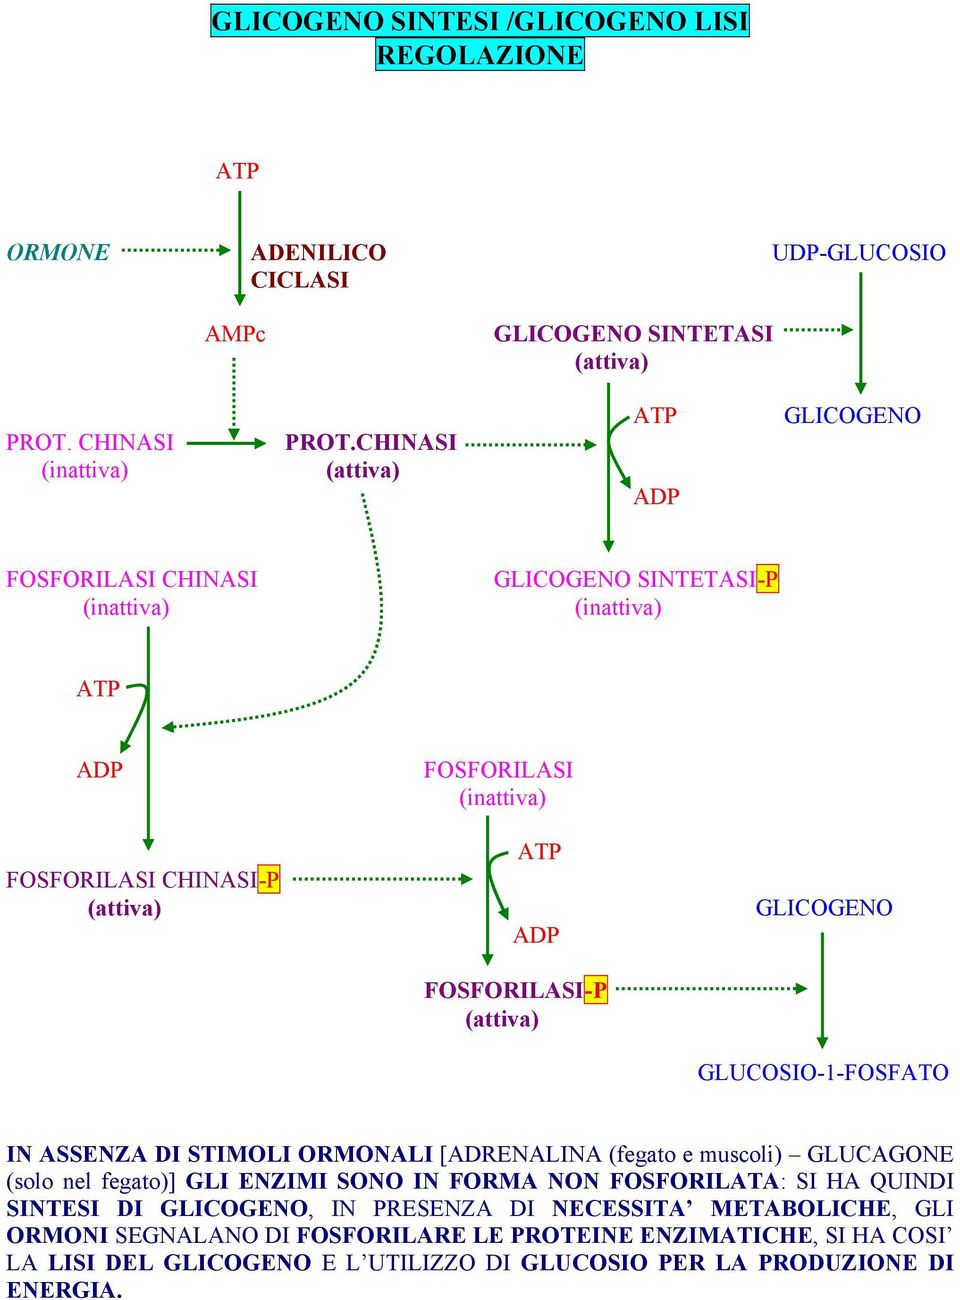 GLICOGENO GLUCOSIO-1-FOSFATO IN ASSENZA DI STIMOLI ORMONALI [ADRENALINA (fegato e muscoli) GLUCAGONE (solo nel fegato)] GLI ENZIMI SONO IN FORMA NON FOSFORILATA: SI HA QUINDI